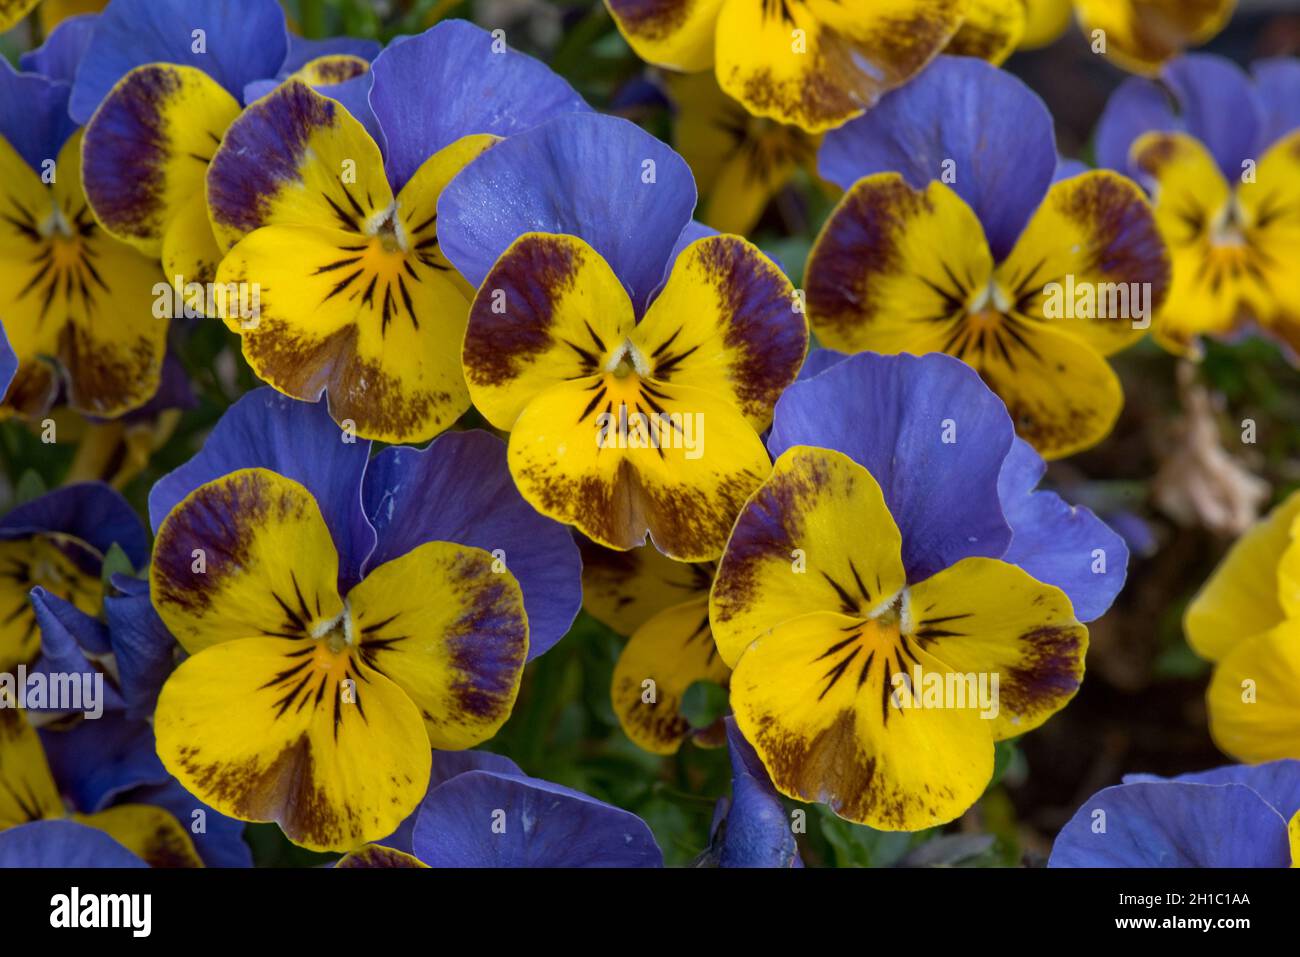 Fiori di una varietà di pansy (Viola spp.) con attraenti fiori blu e giallo con marcature viola, marzo Foto Stock